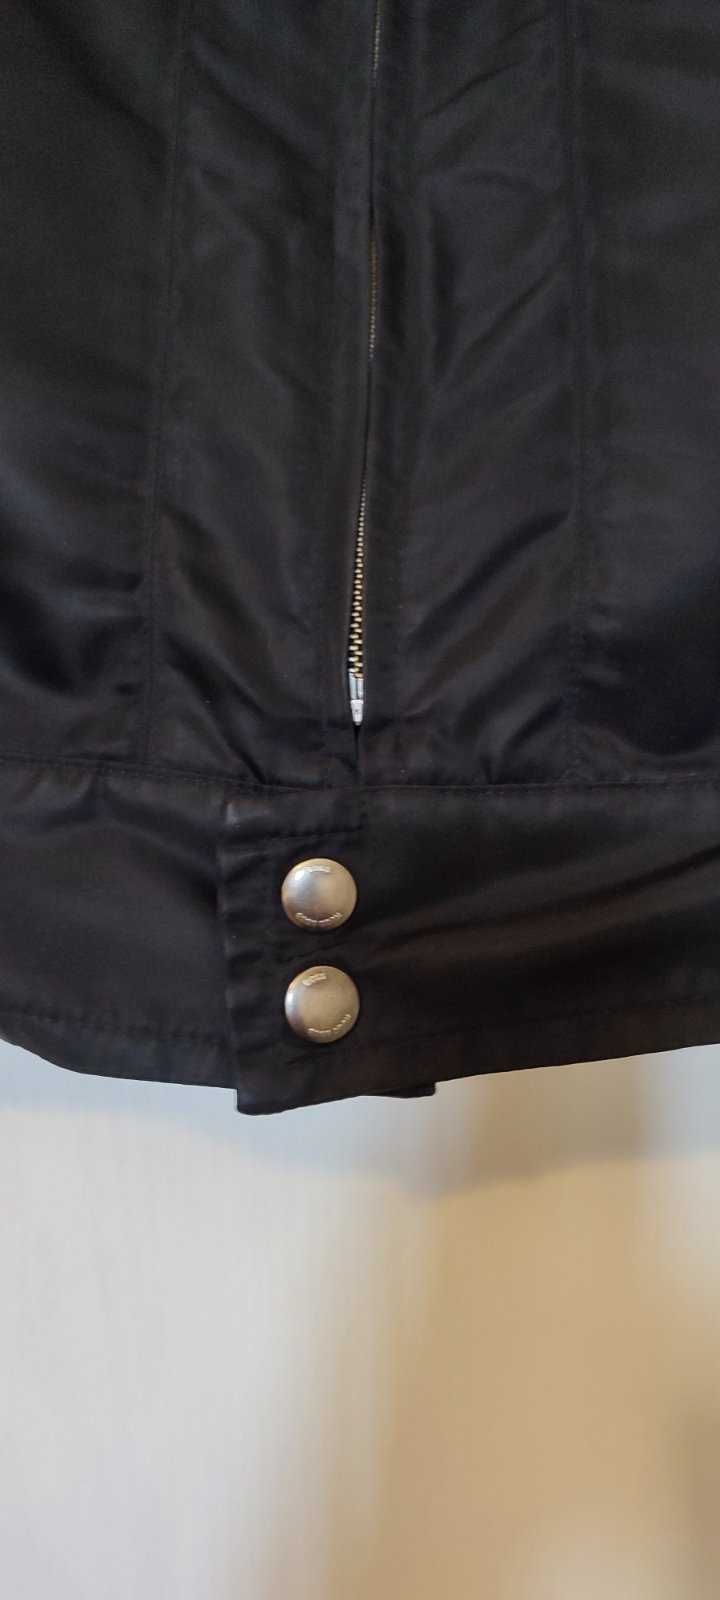 Куртка Hugo Boss original 48 M-L ветровка,косуха.